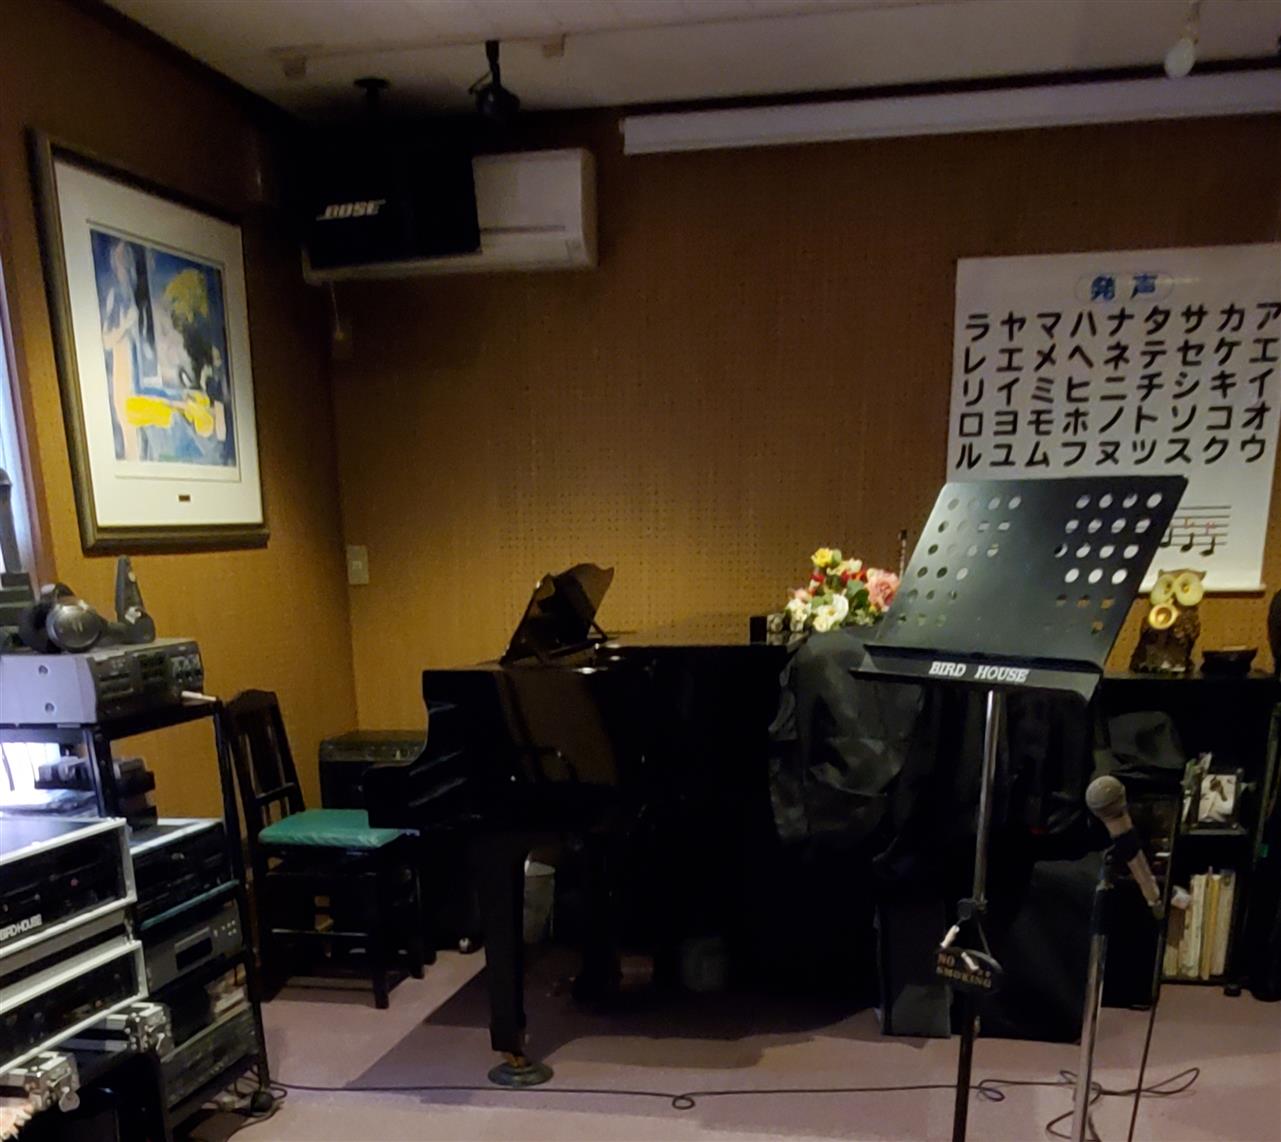 バードハウス 真弓のつぶやき 焼津市の音楽スクール